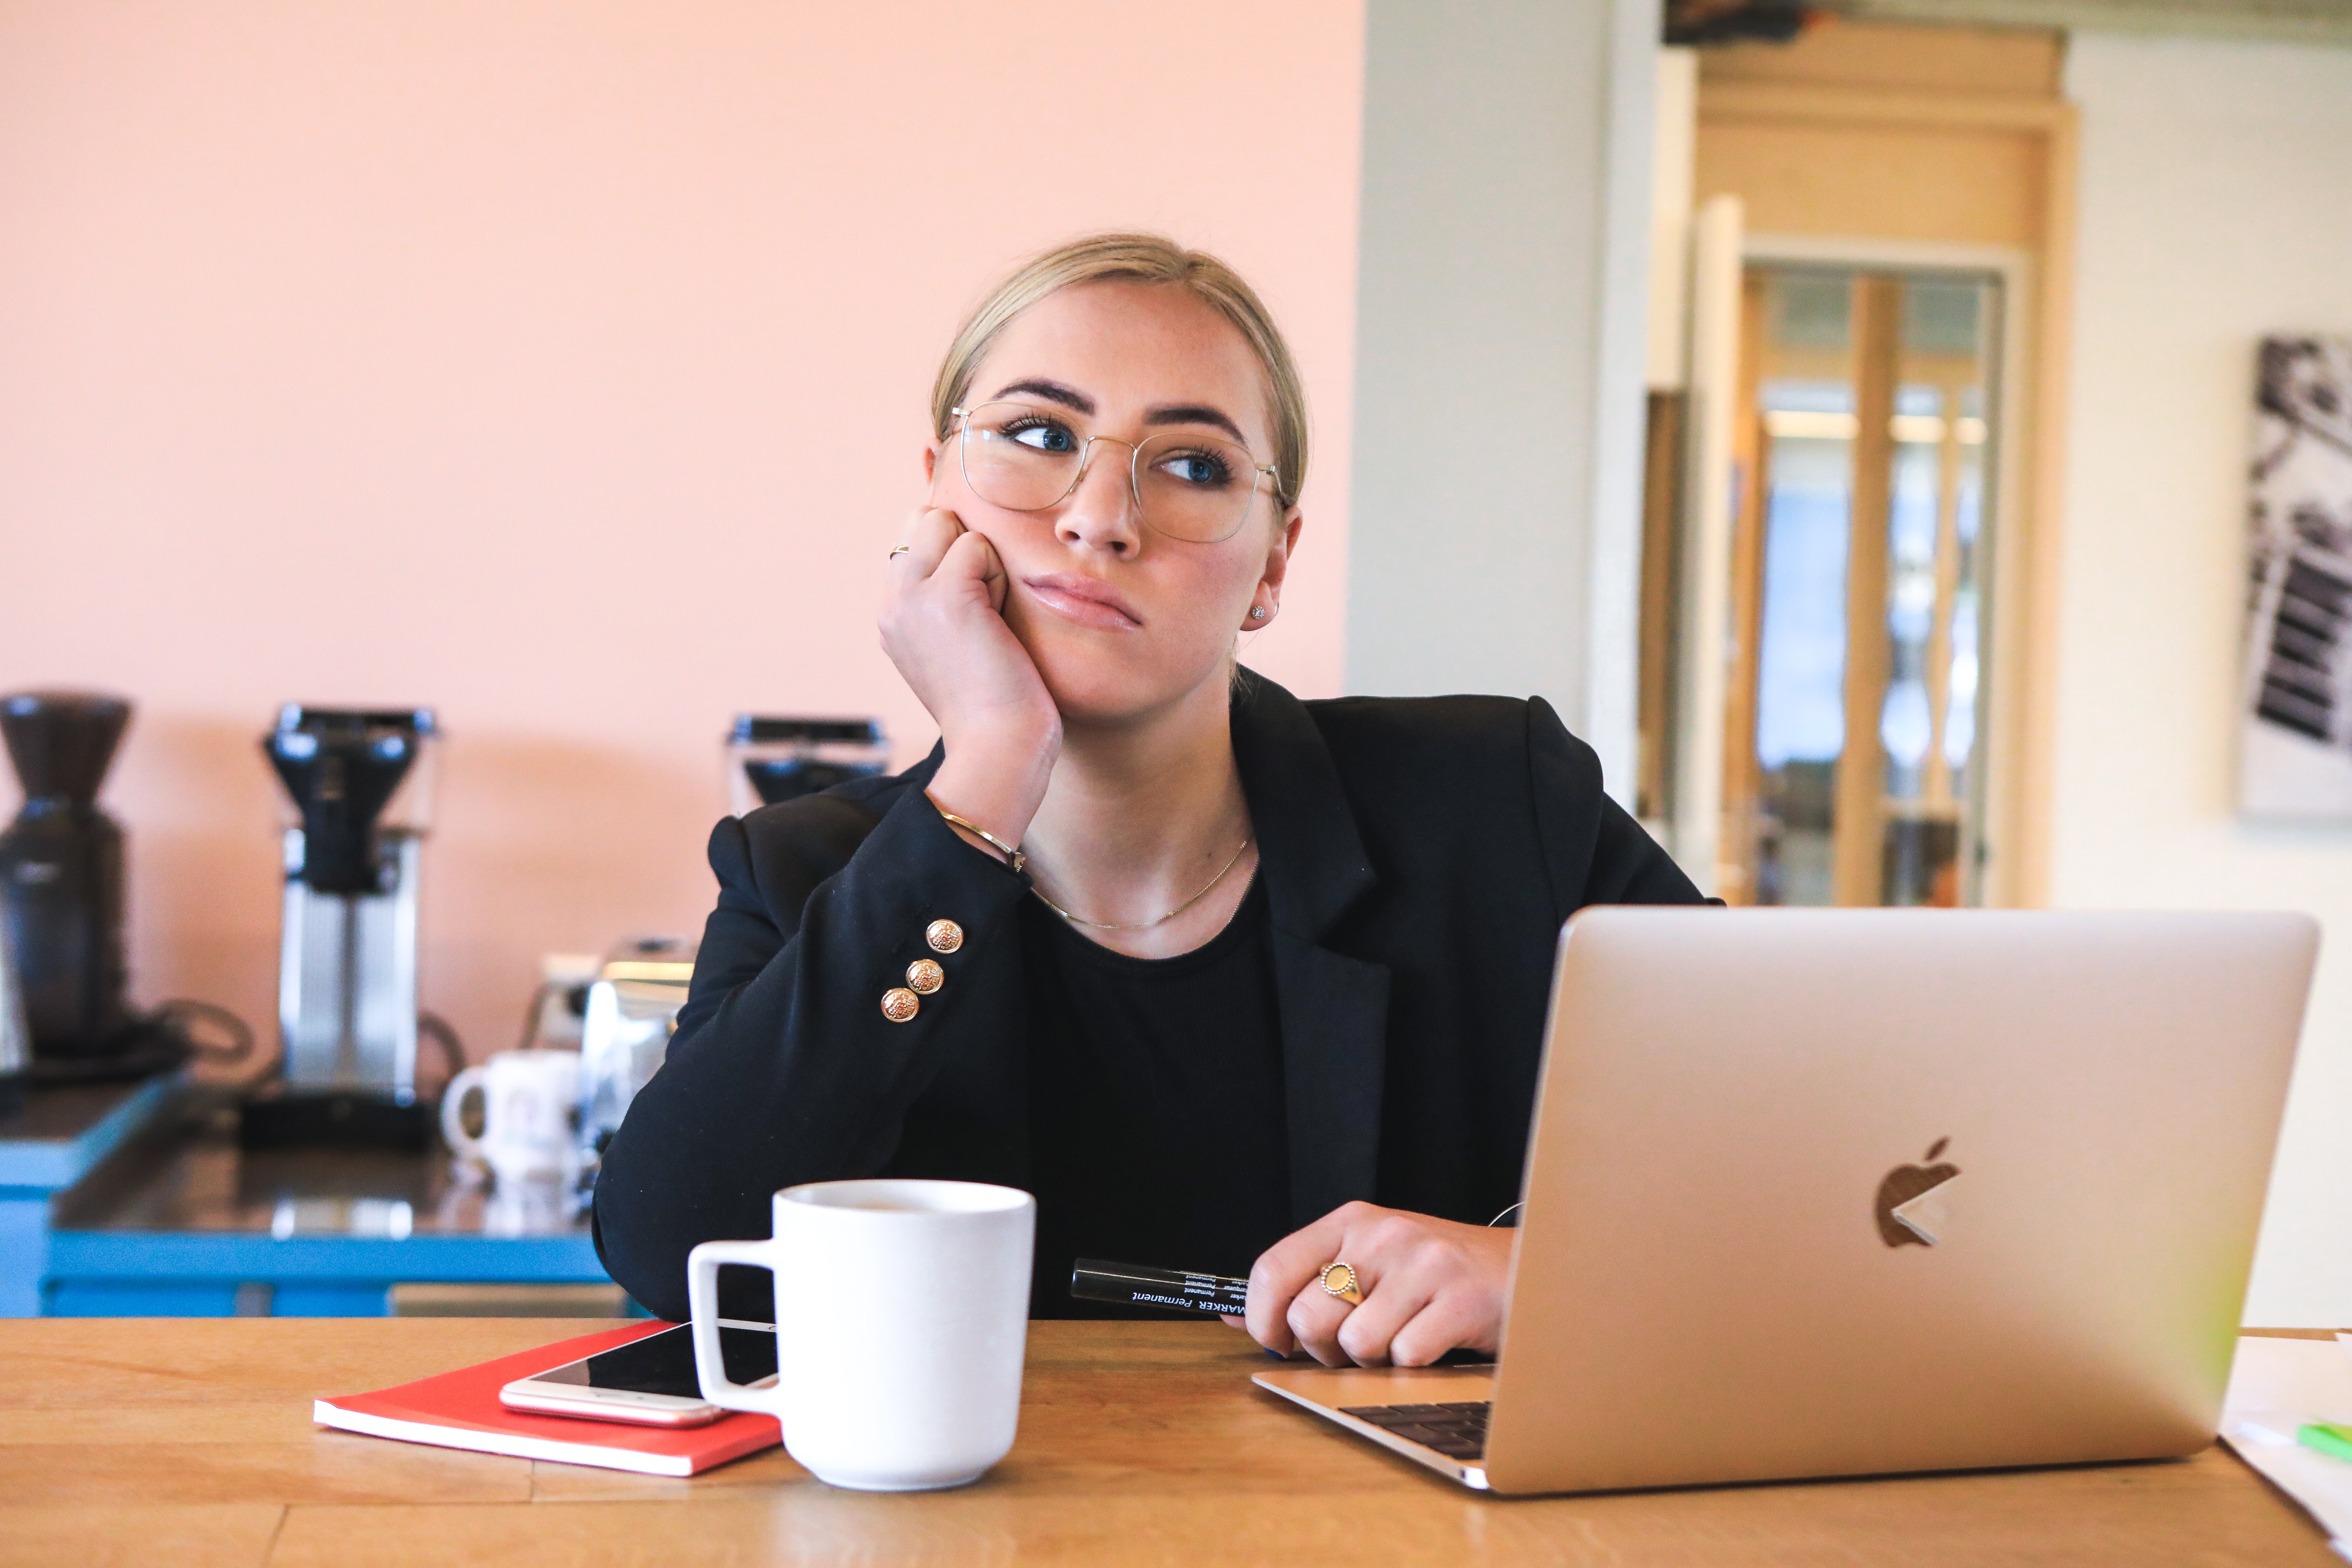 Eine junge Frau mit blonden Haaren und Brille sitzt vor einem Laptop und schaut nachdenklich und etwas missmutig ins Leere